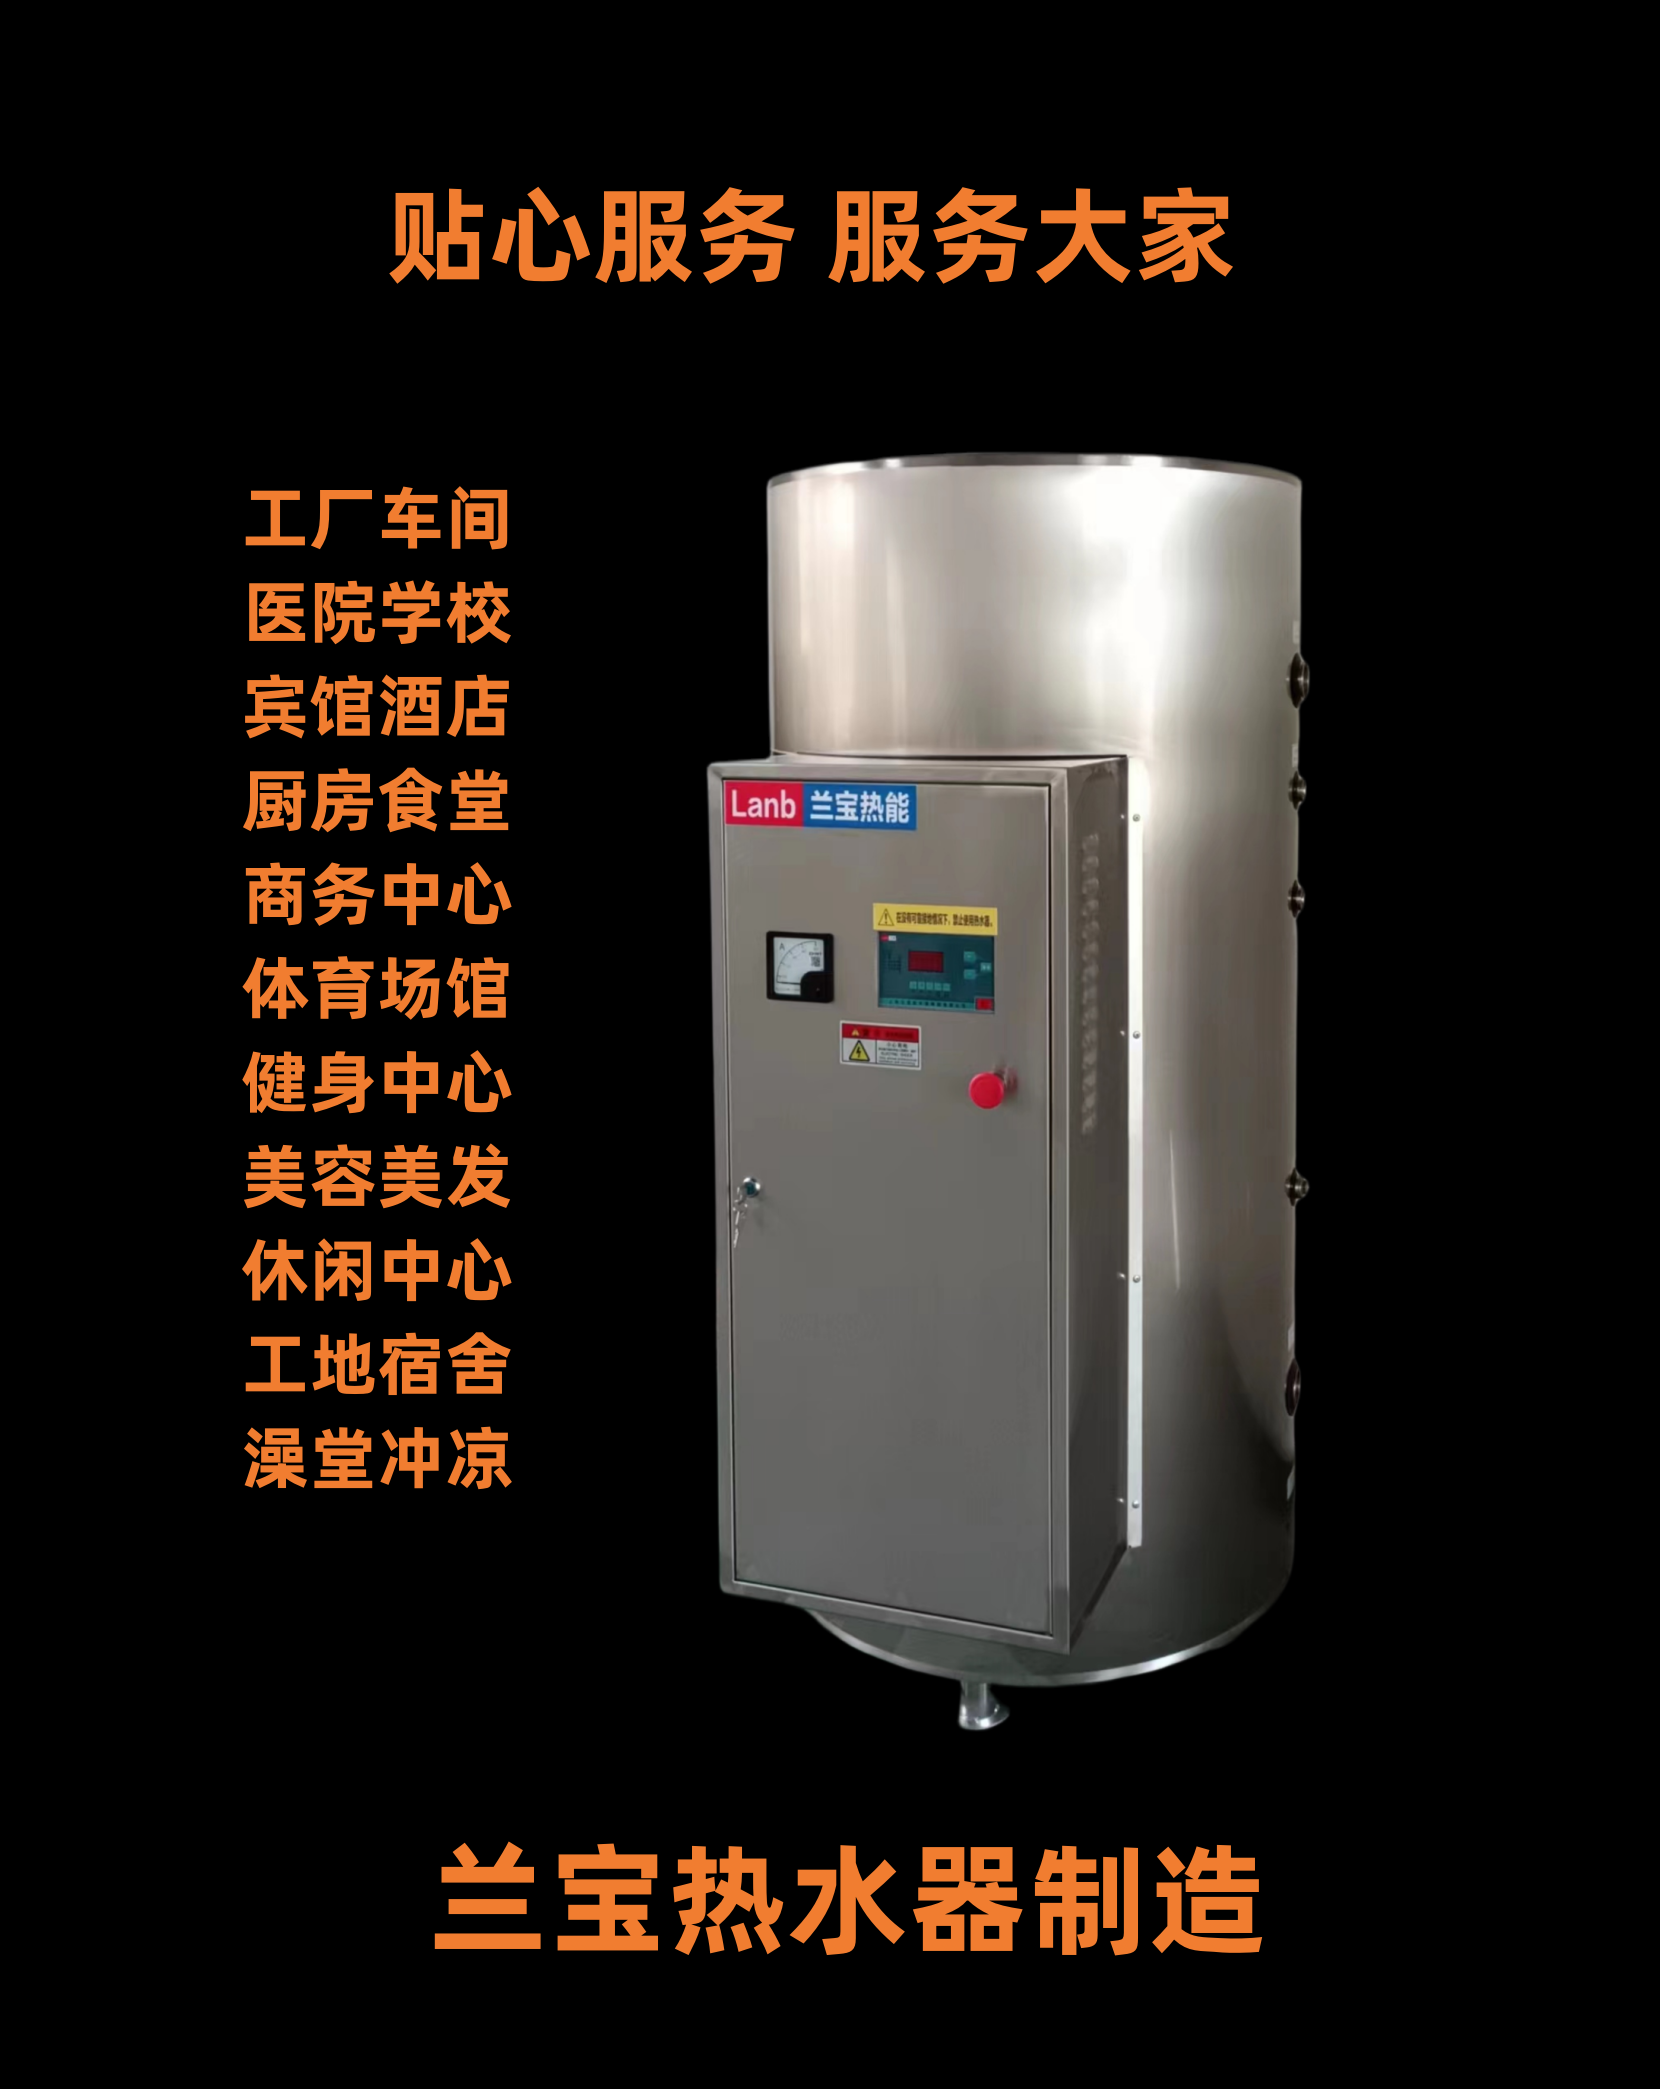 供应上海兰宝JLB-300-9电热水器 上海兰宝JLB-300-9电热水器